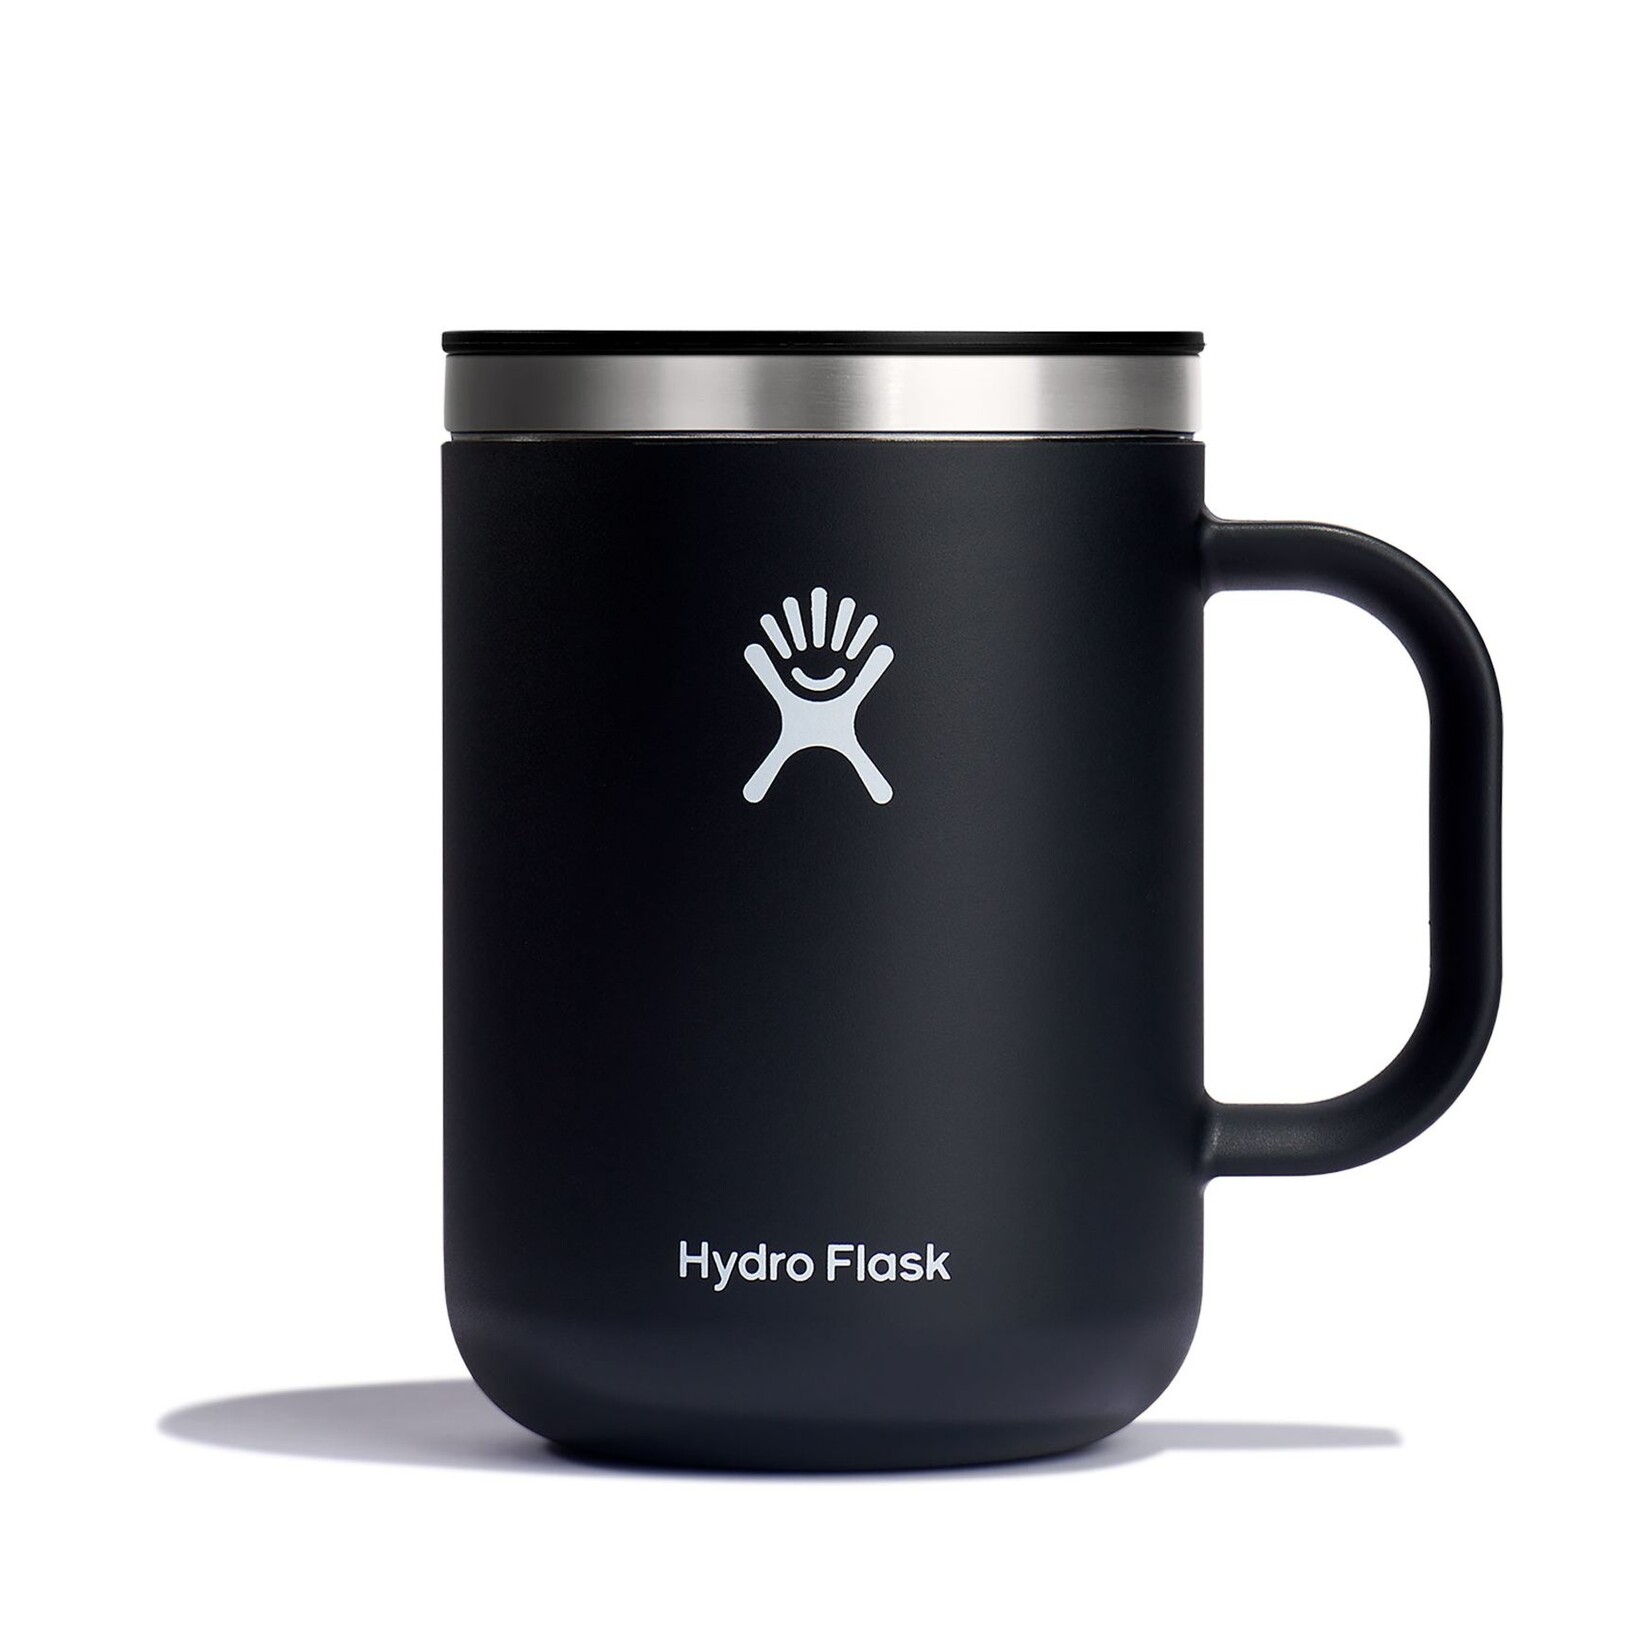 Hydro Flask Hydro Flask Cafe Mug Black  24oz